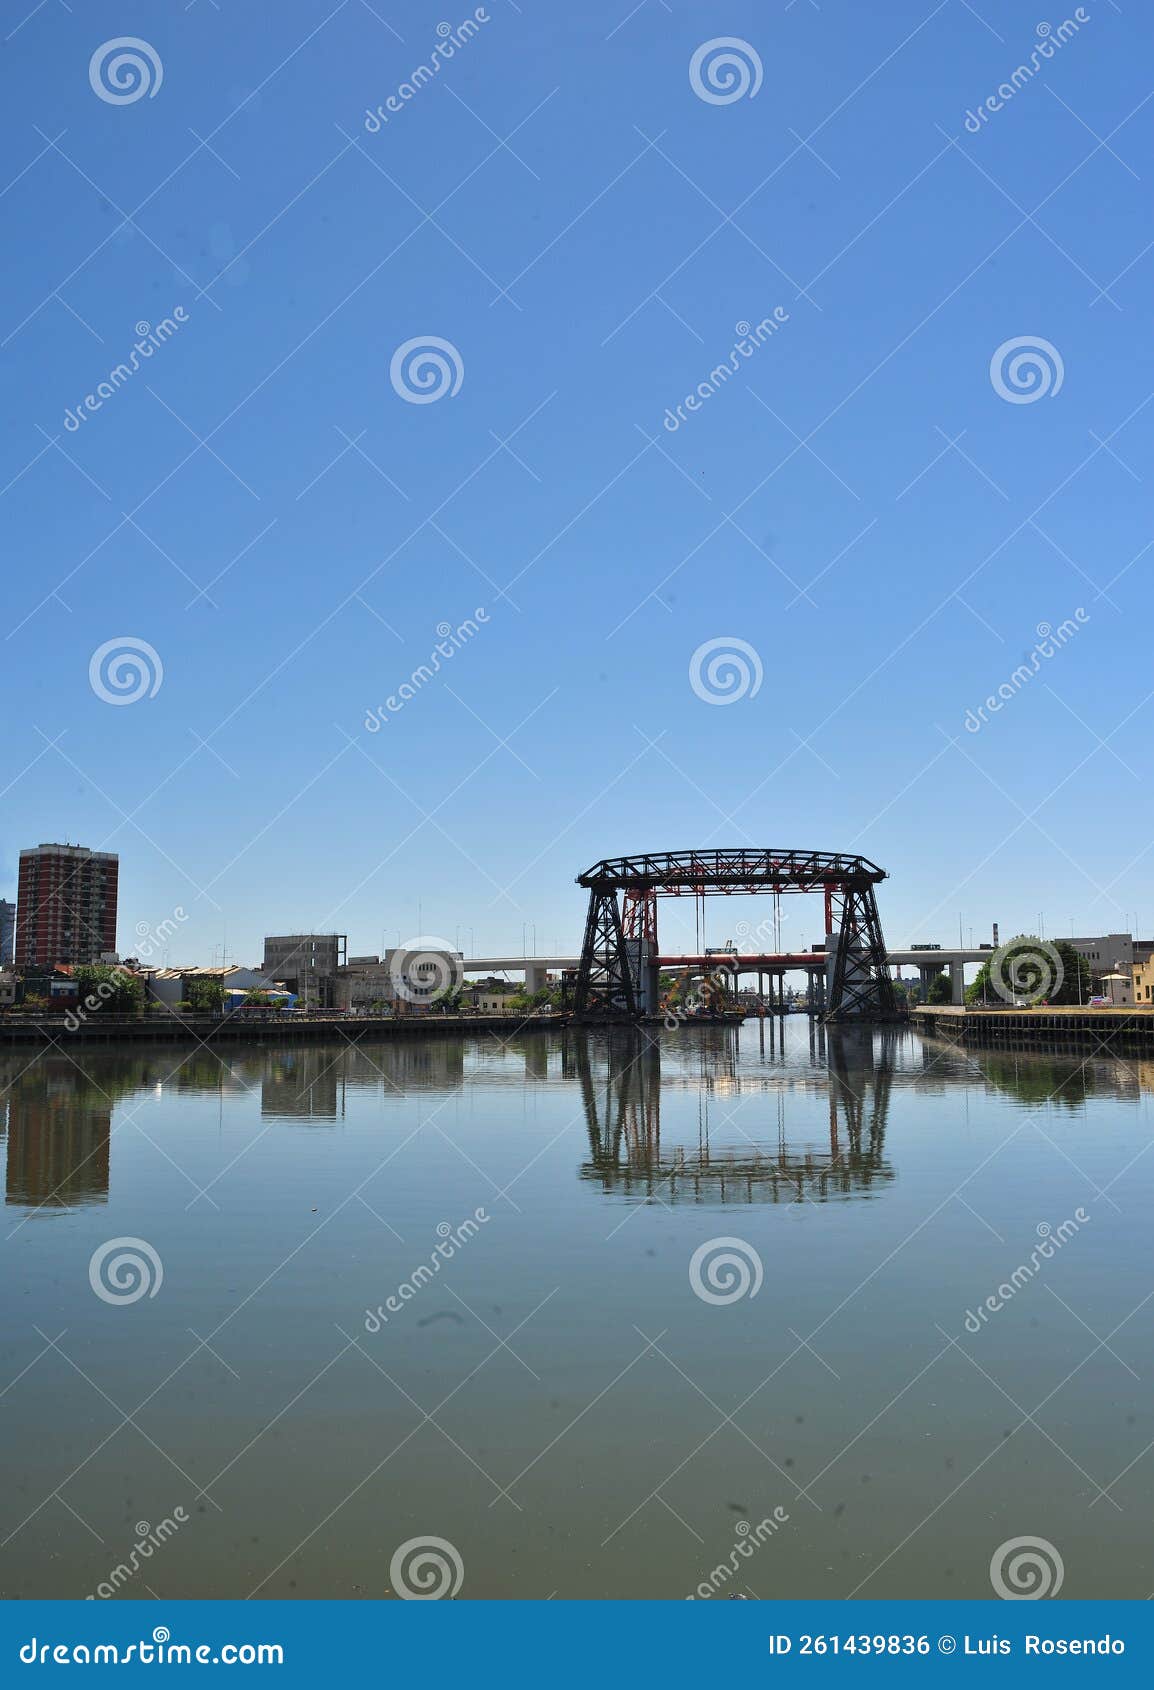 buenos aires argentina -old nicolas avellaneda steel bridge across riachuelo in la boca, buenos aires argentina.